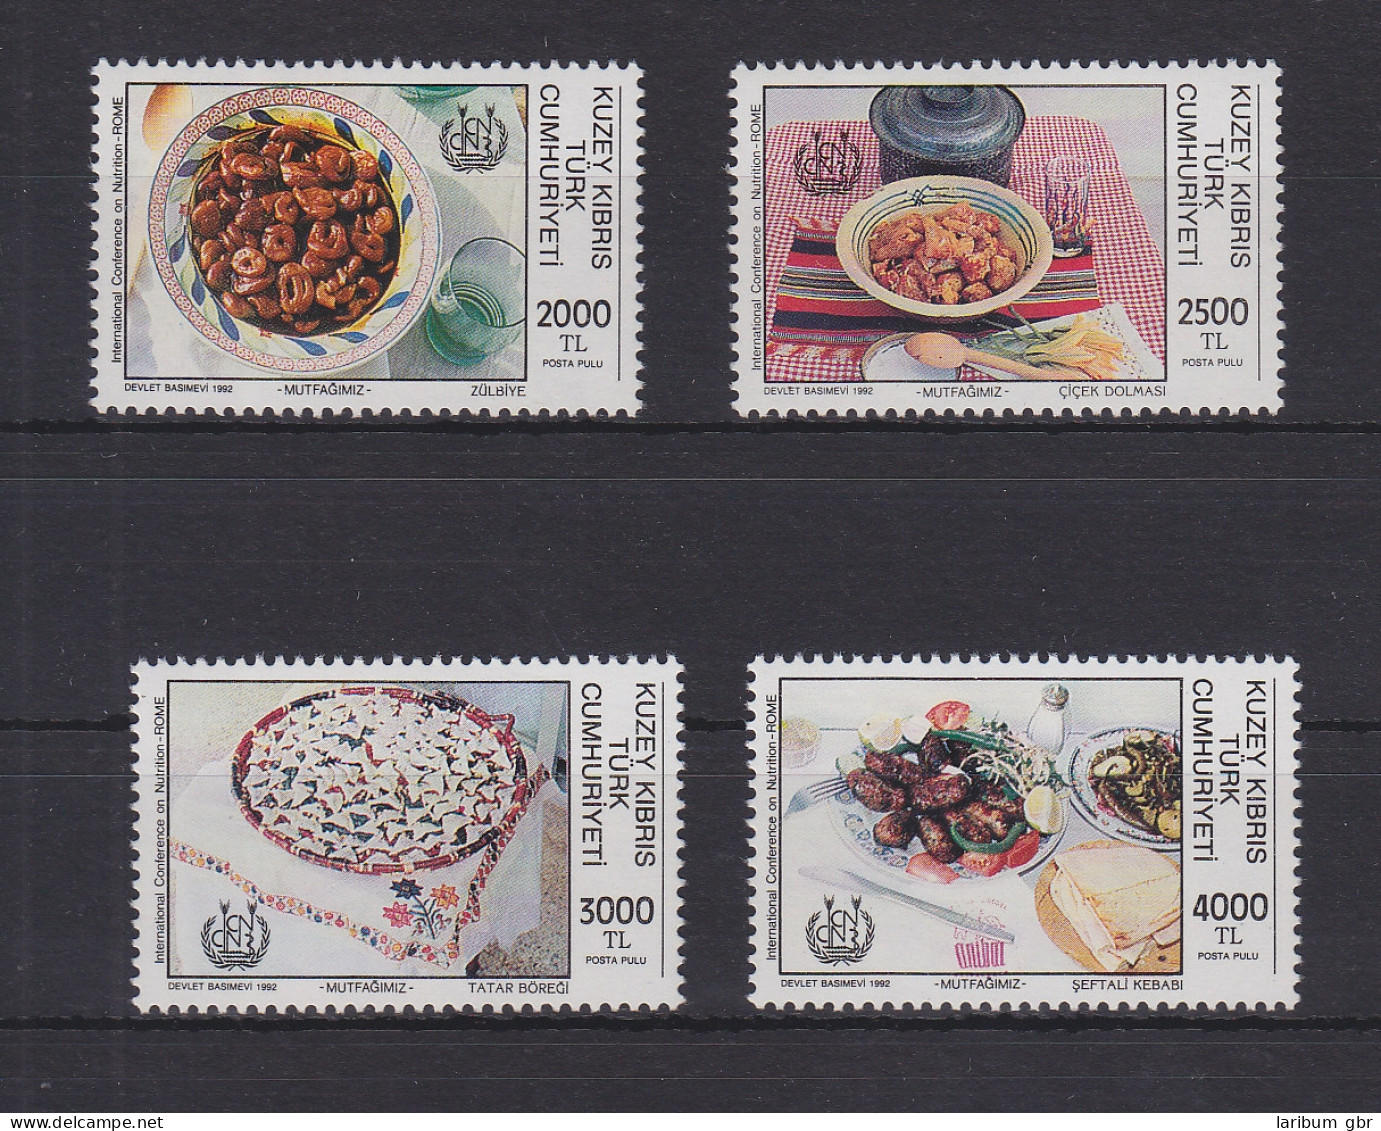 Türkisch-Zypern 347-350 Postfrisch Ernährung, Cyprus MNH #GE111 - Usati